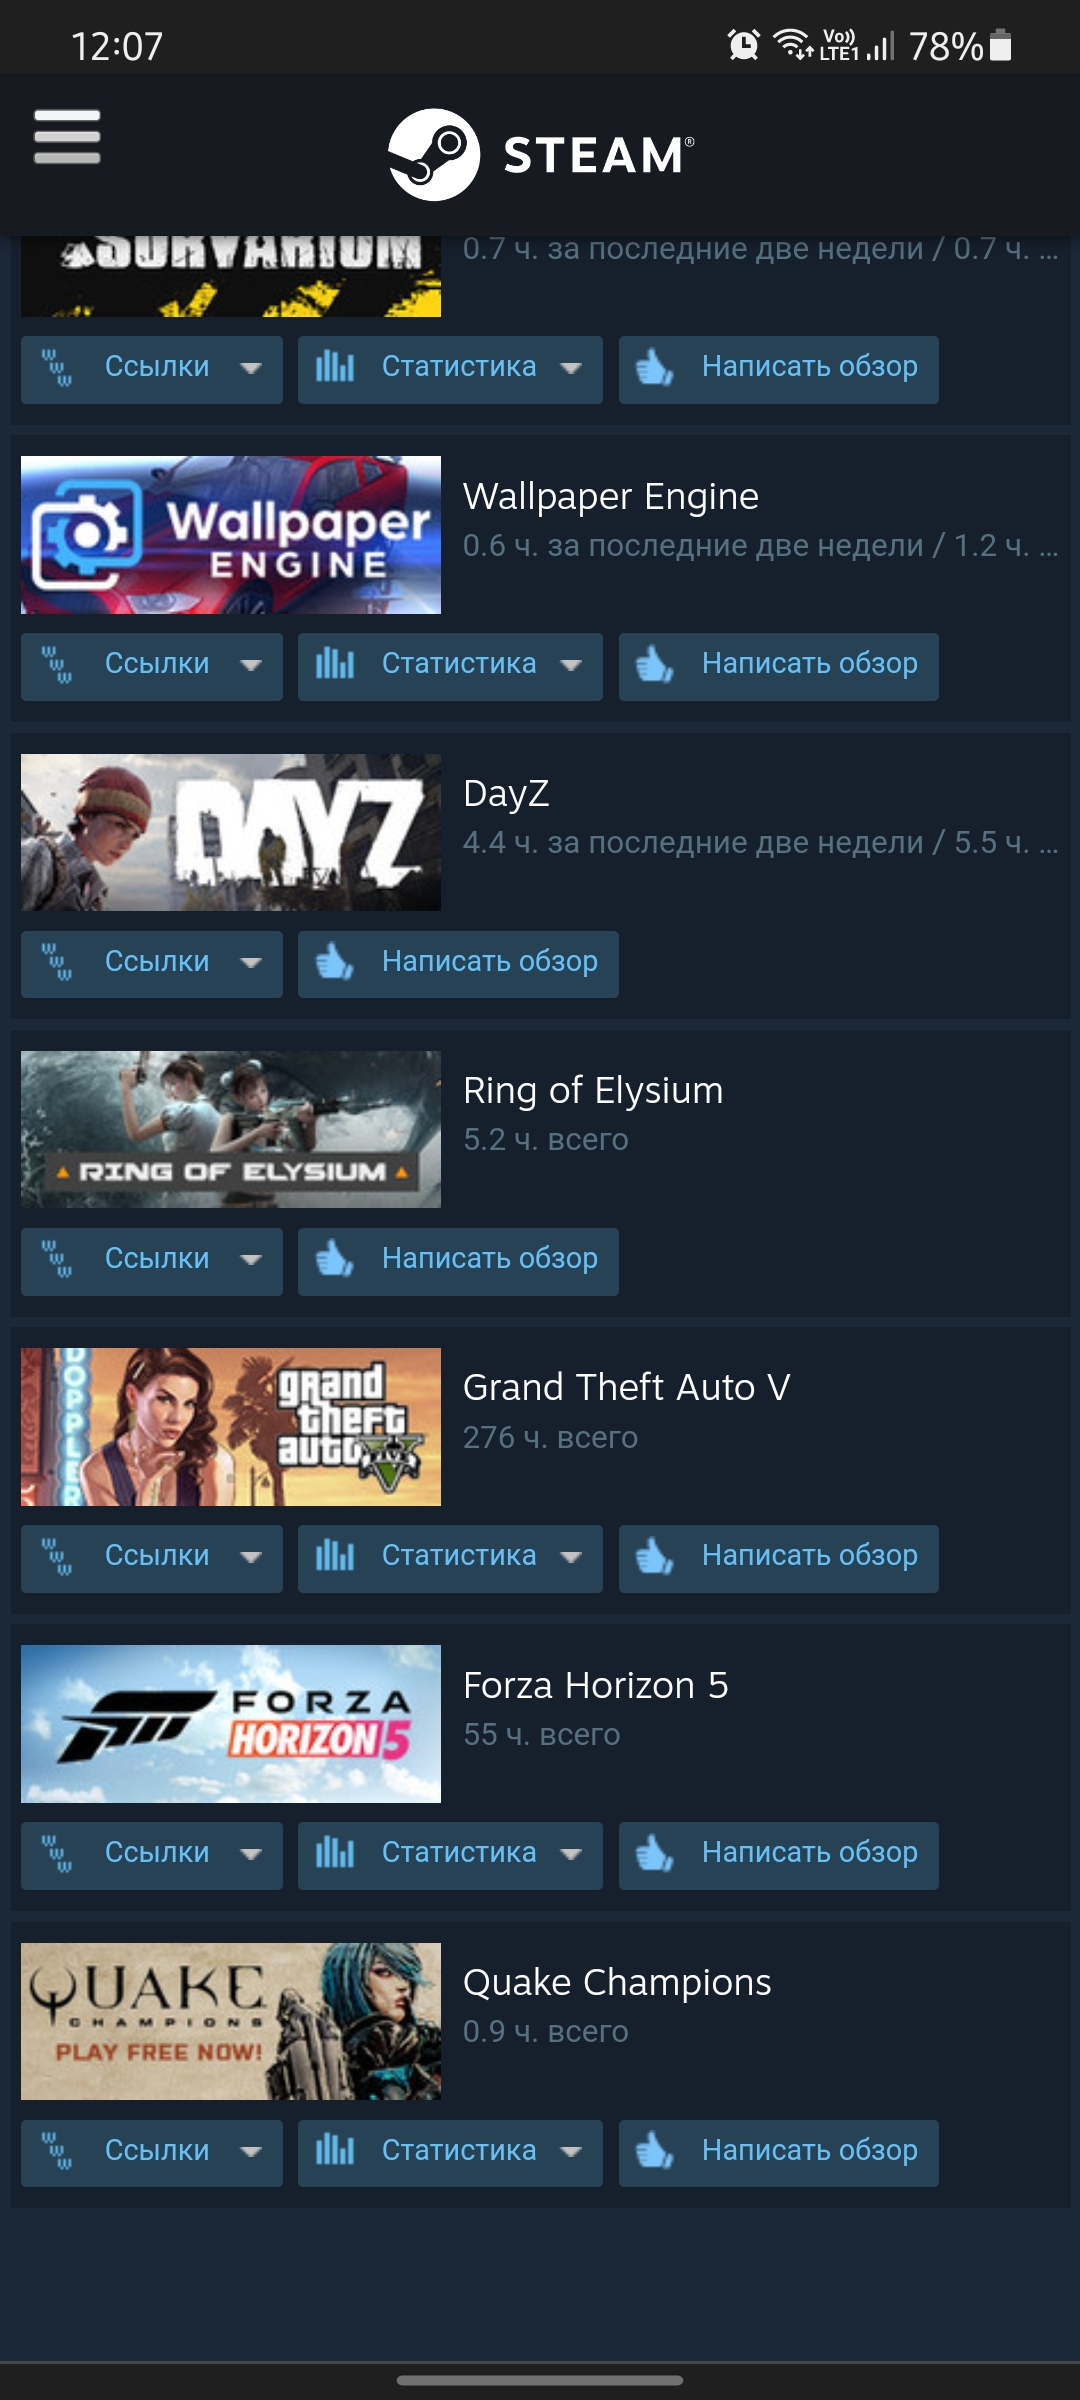 продажа аккаунта к игре Forza Horizon